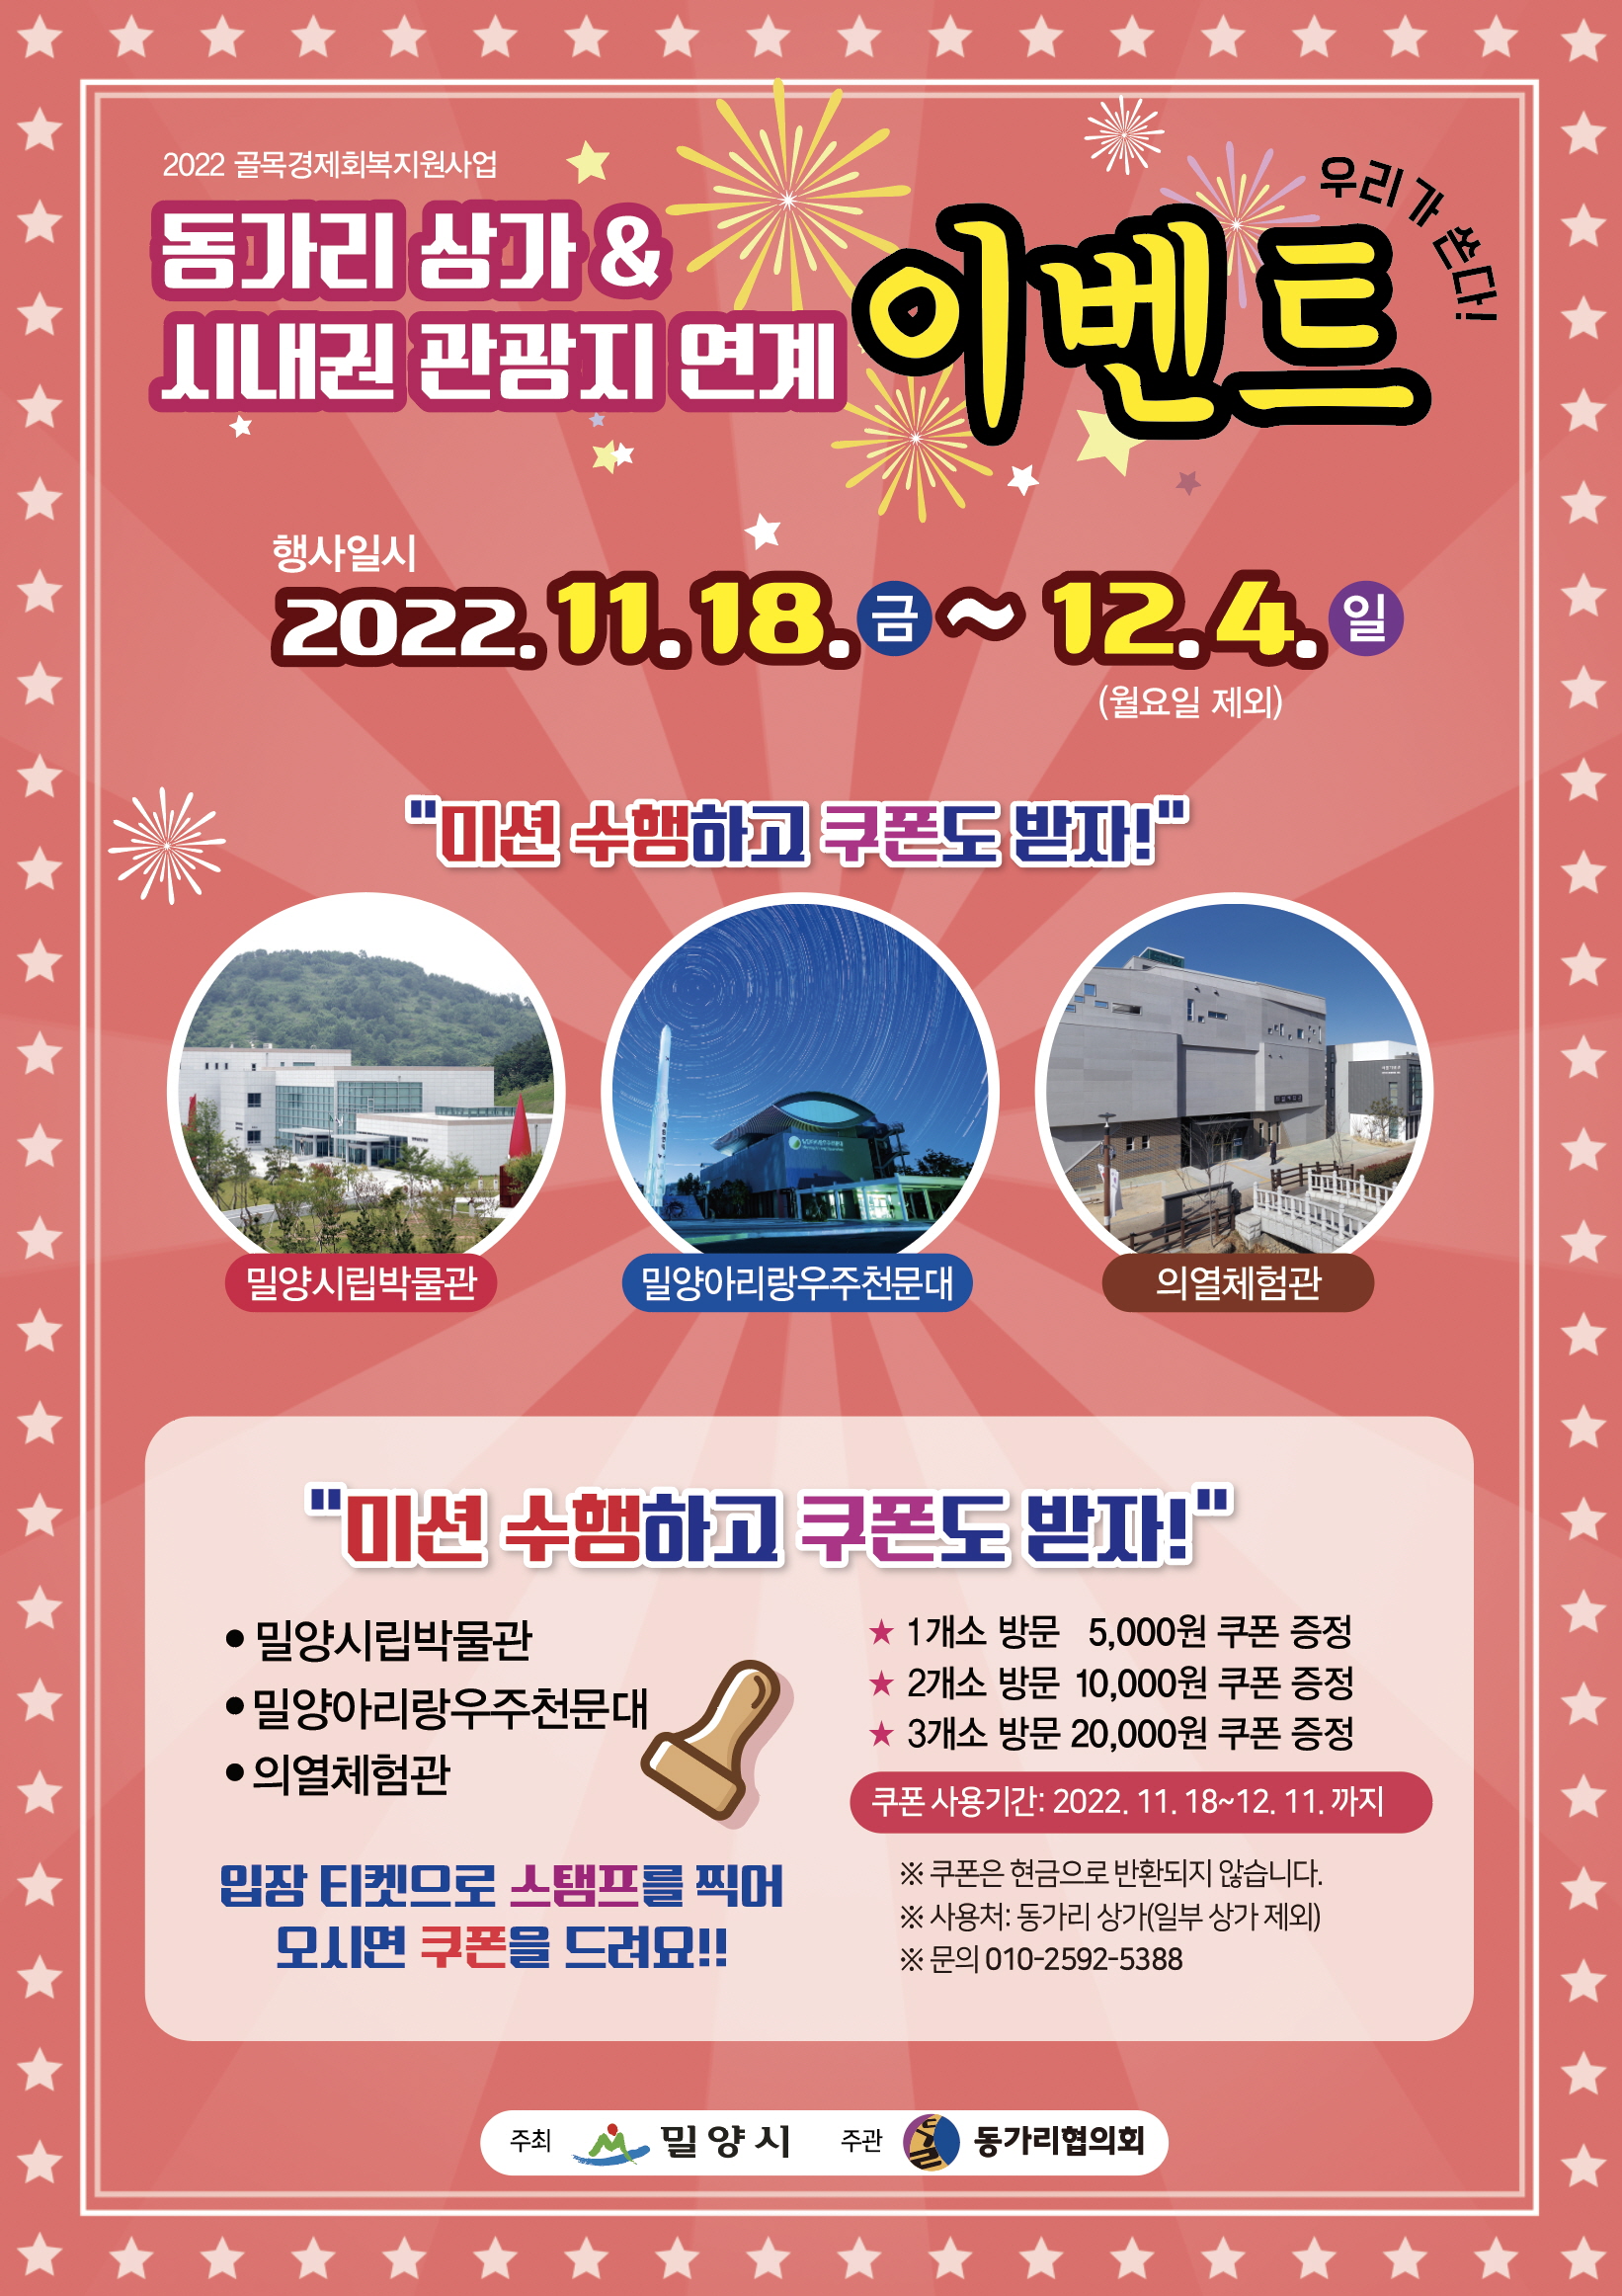 20221117-밀양시 동가리&시내권 관광지 연계 이벤트 실시.jpg